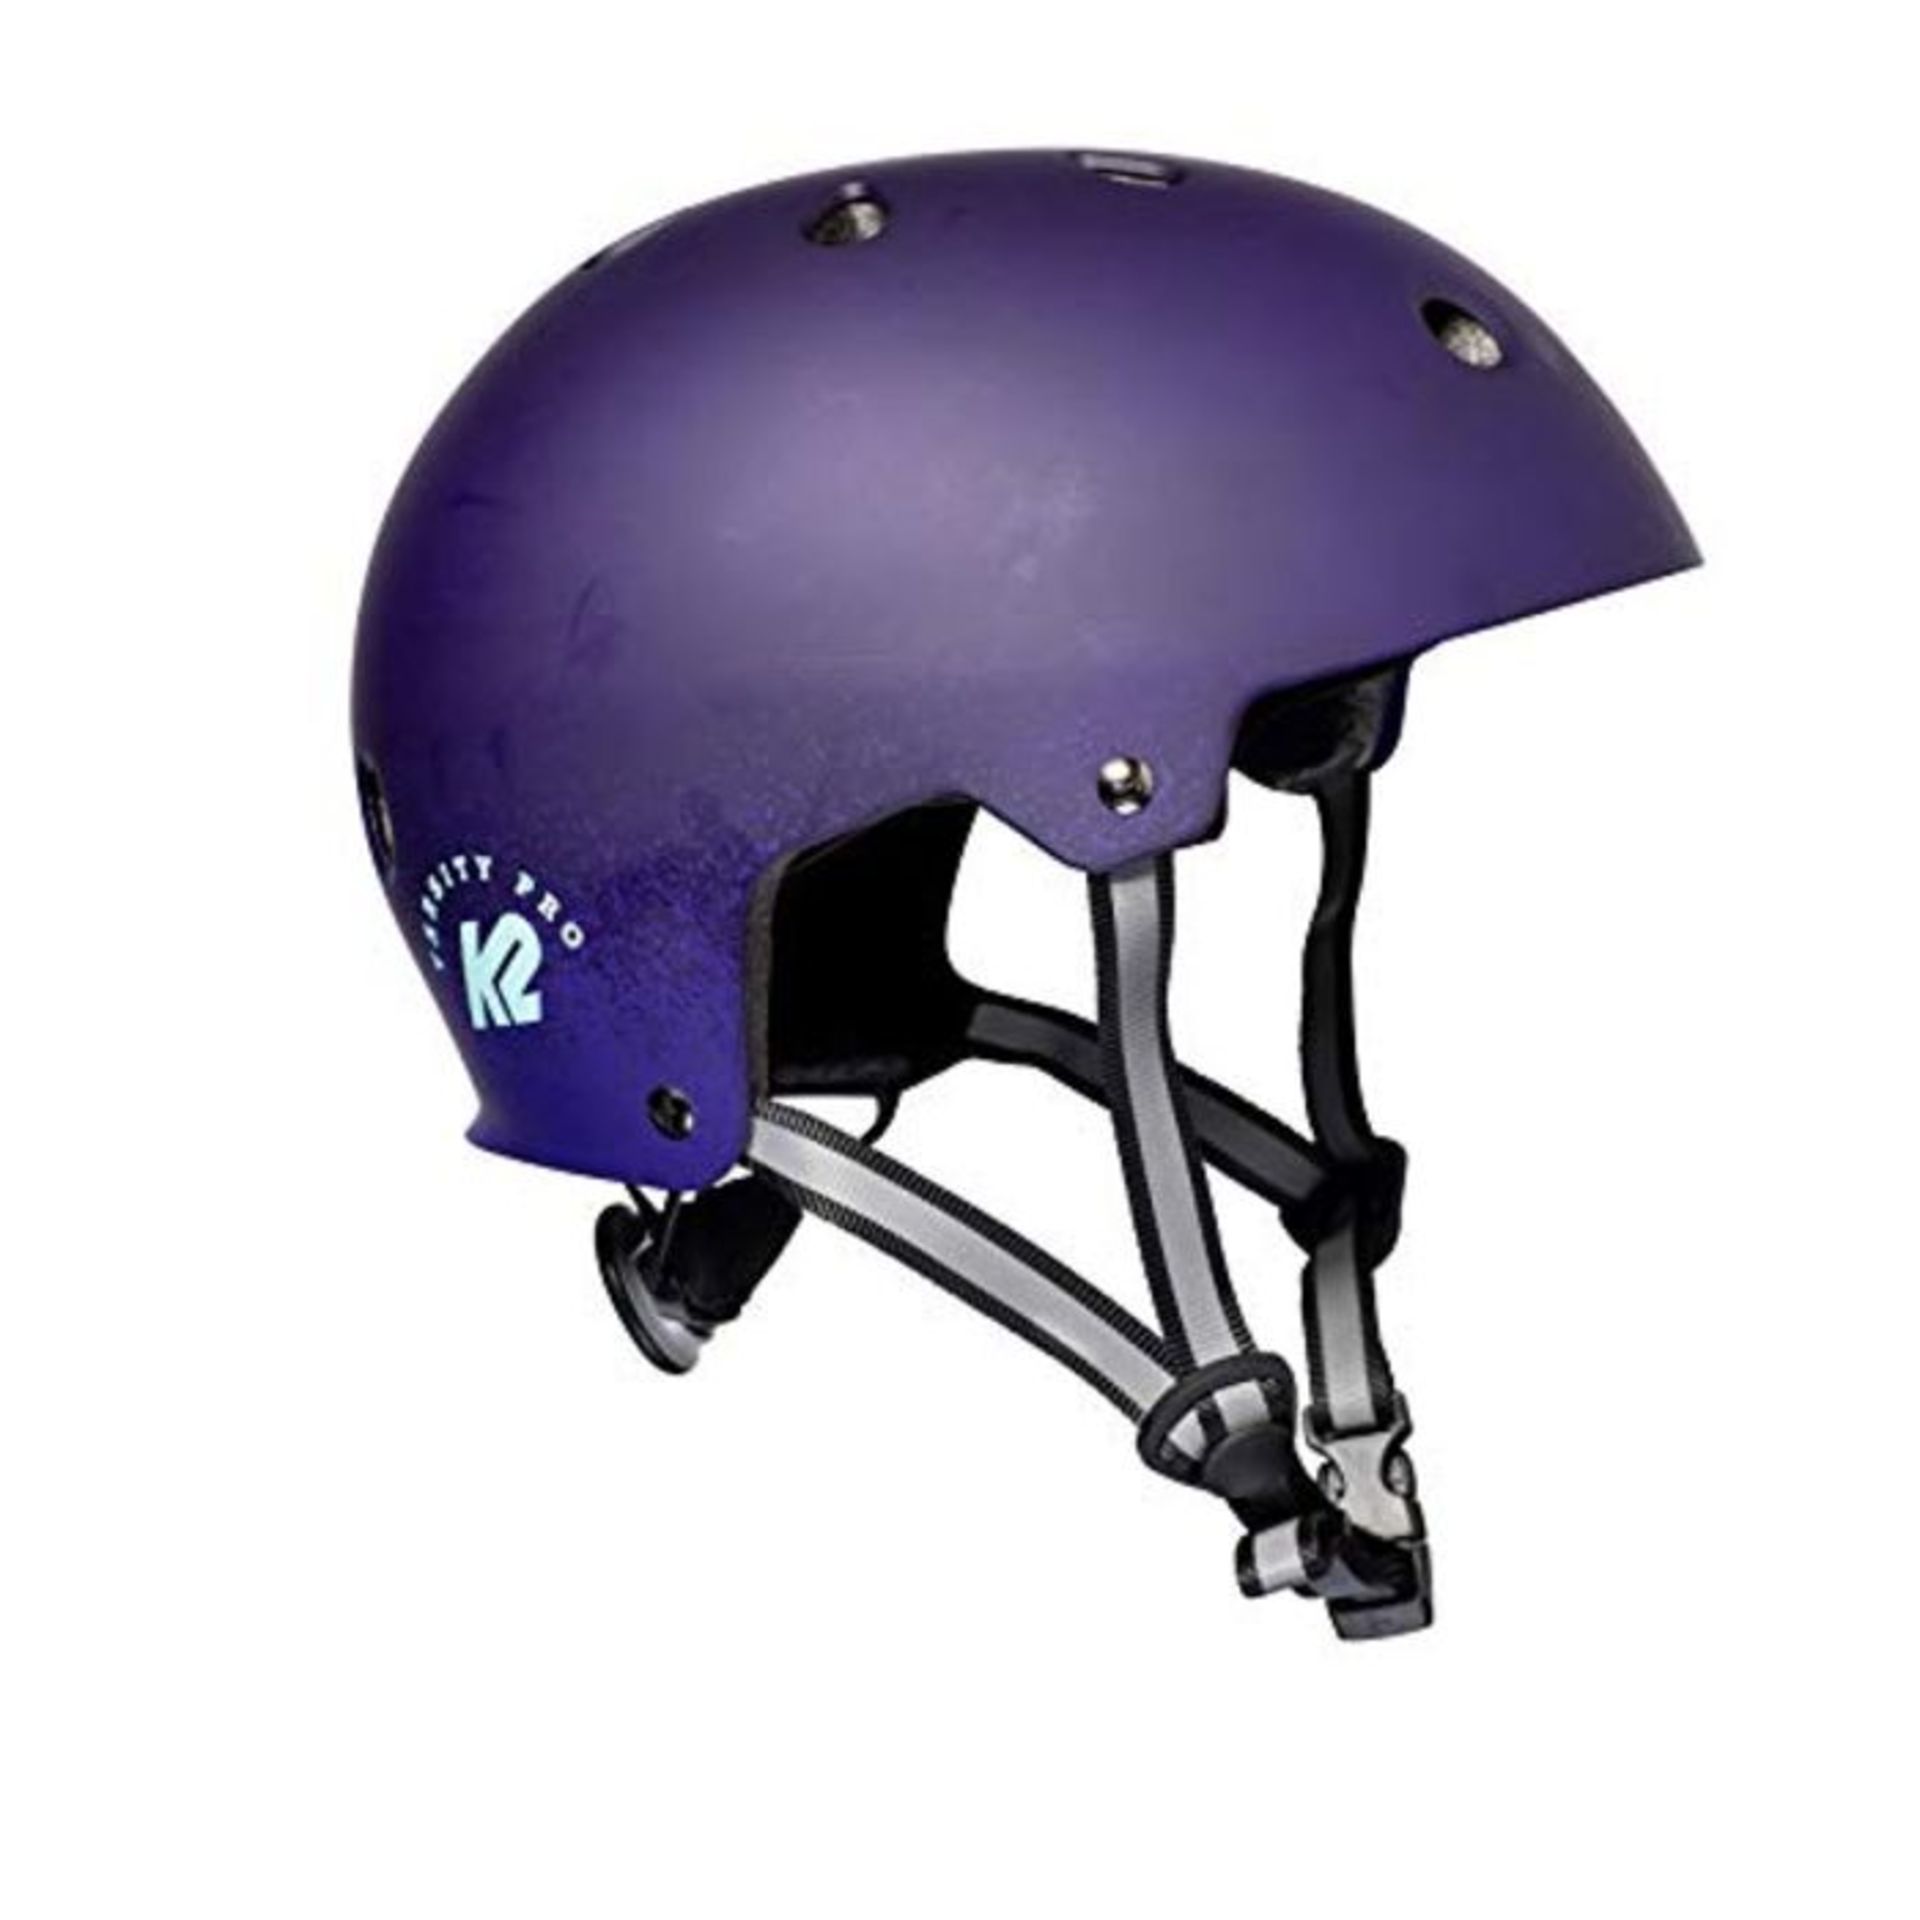 K2 Unisex - Adult's Varsity PRO Helmet, Purple, M (55-58cm)